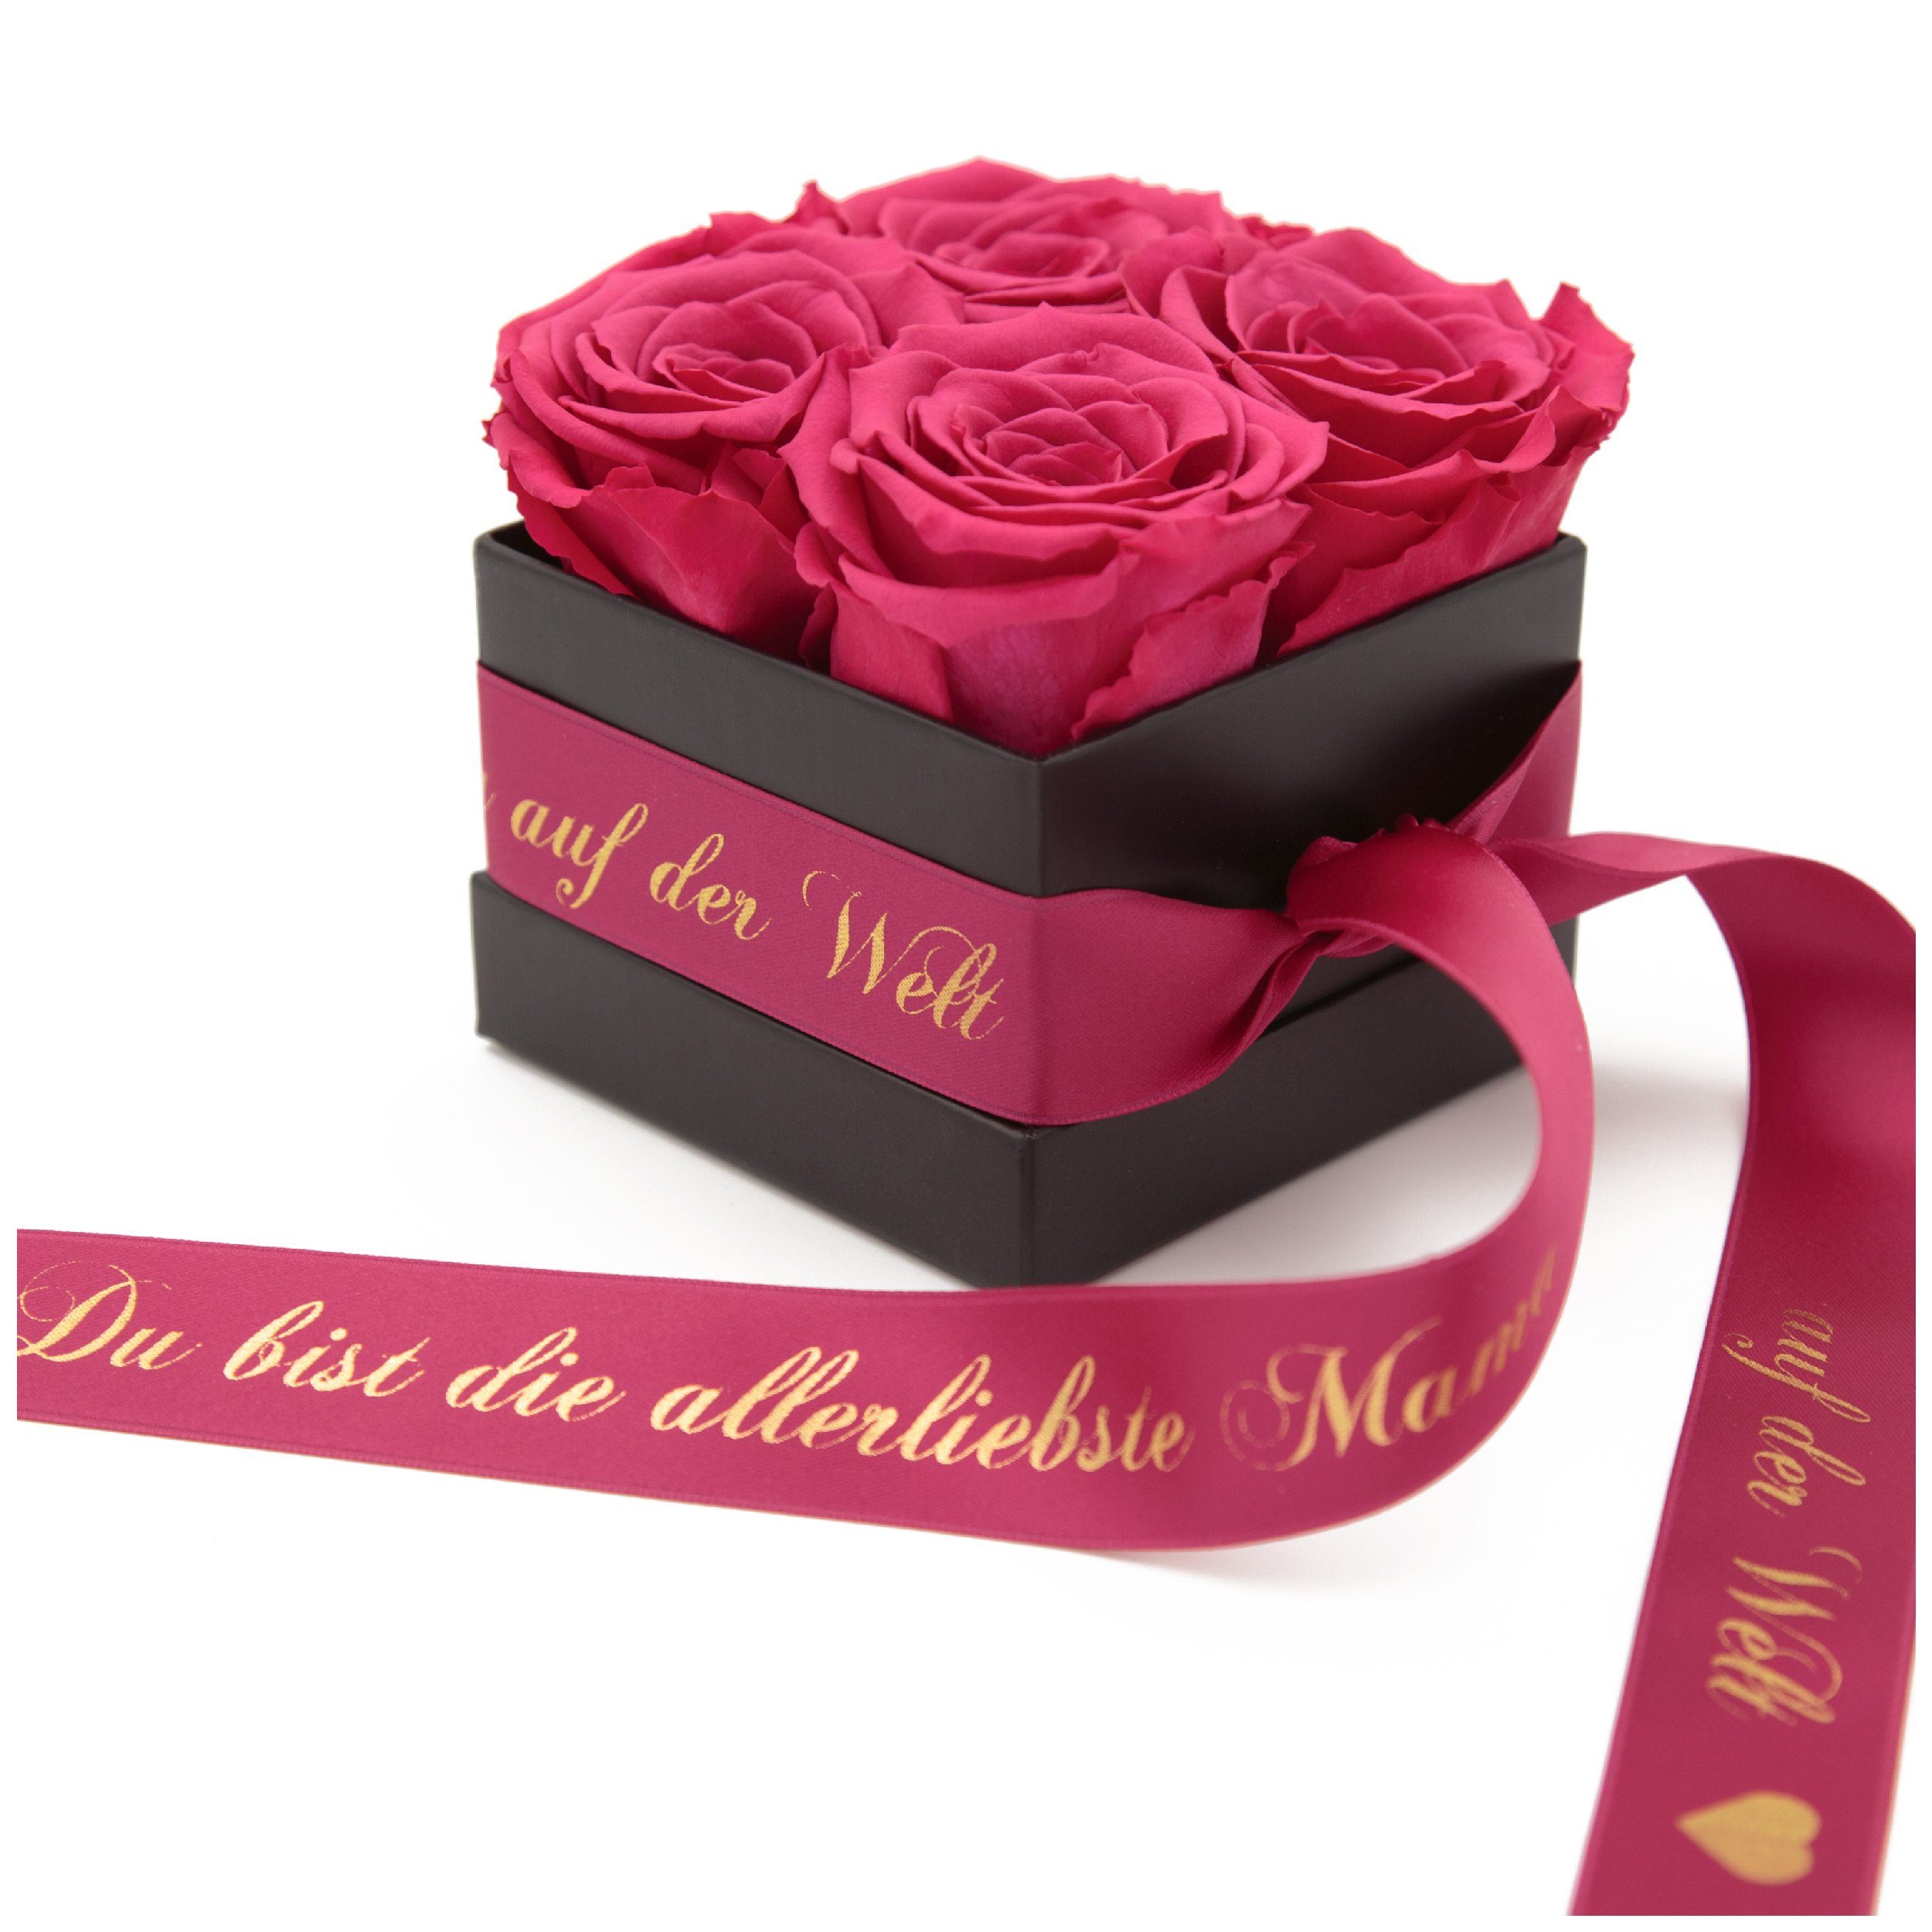 Kunstblume Allerliebste Geschenk cm, haltbar Rosenbox Rosen Echte Rosen ROSEMARIE auf SCHULZ Höhe der konservierte Mama 8,5 Pink 4 Rose, Heidelberg, 3 Welt Jahre